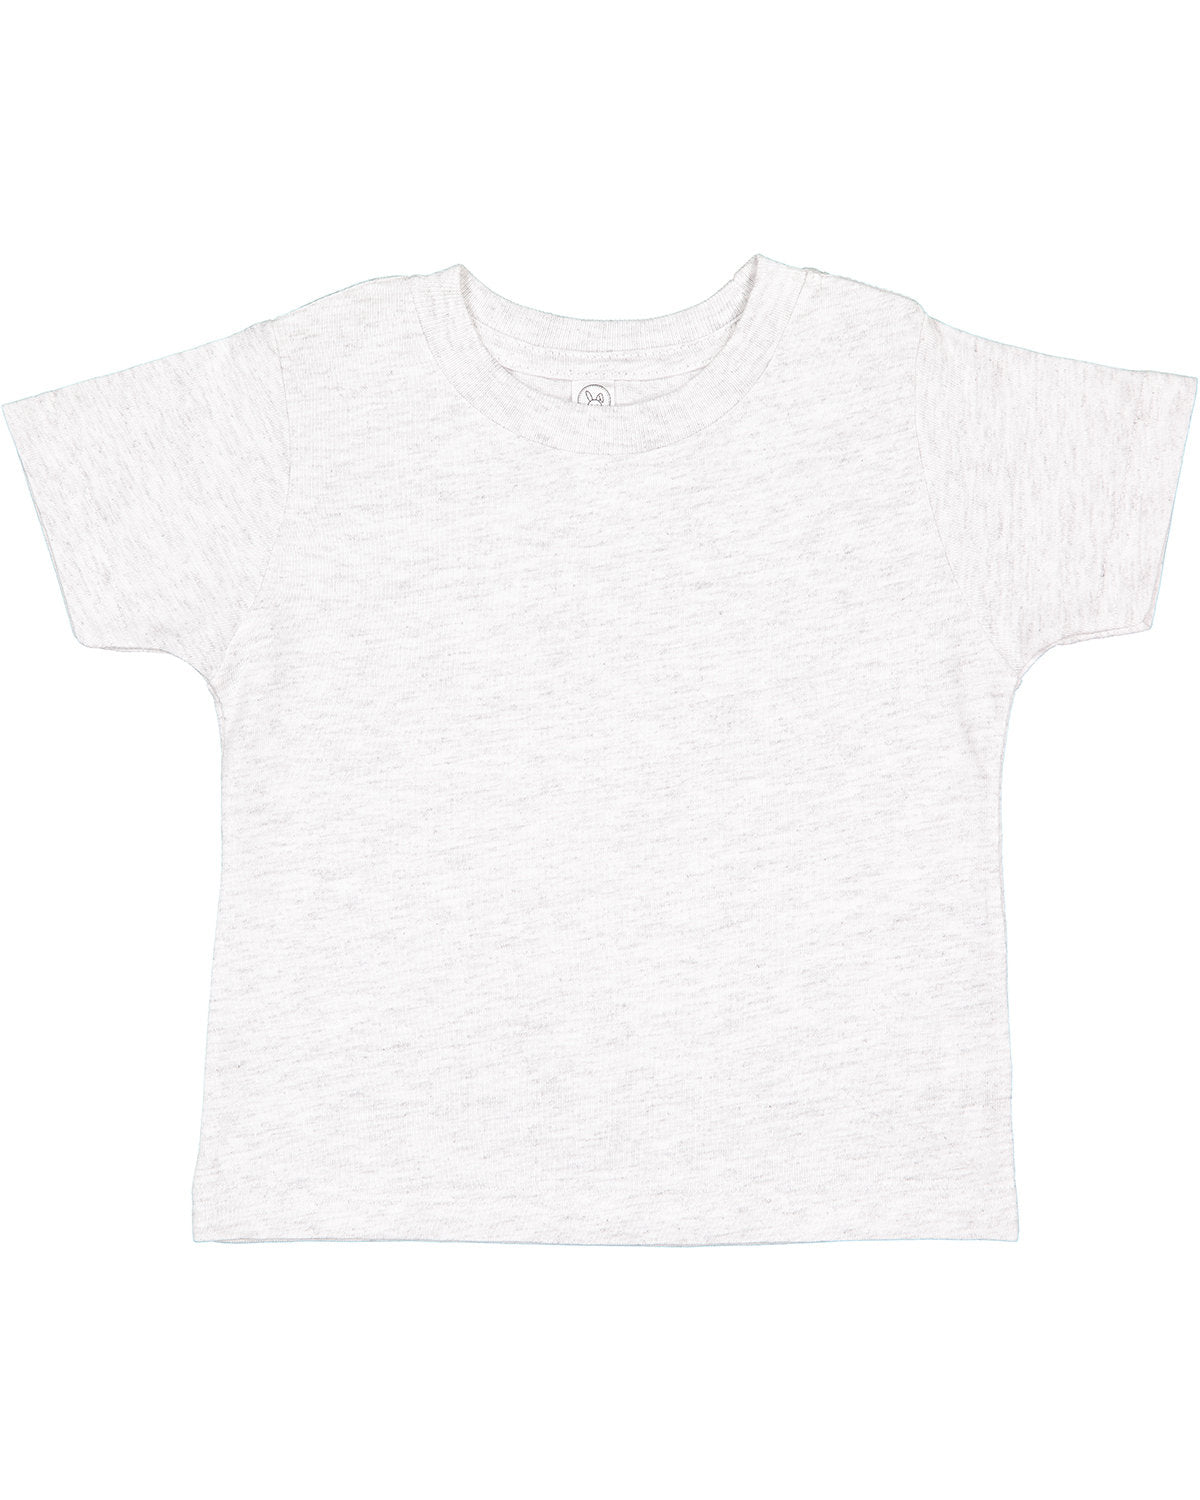 Rabbit Skins Toddler Cotton Jersey T-Shirt 2T / Ash